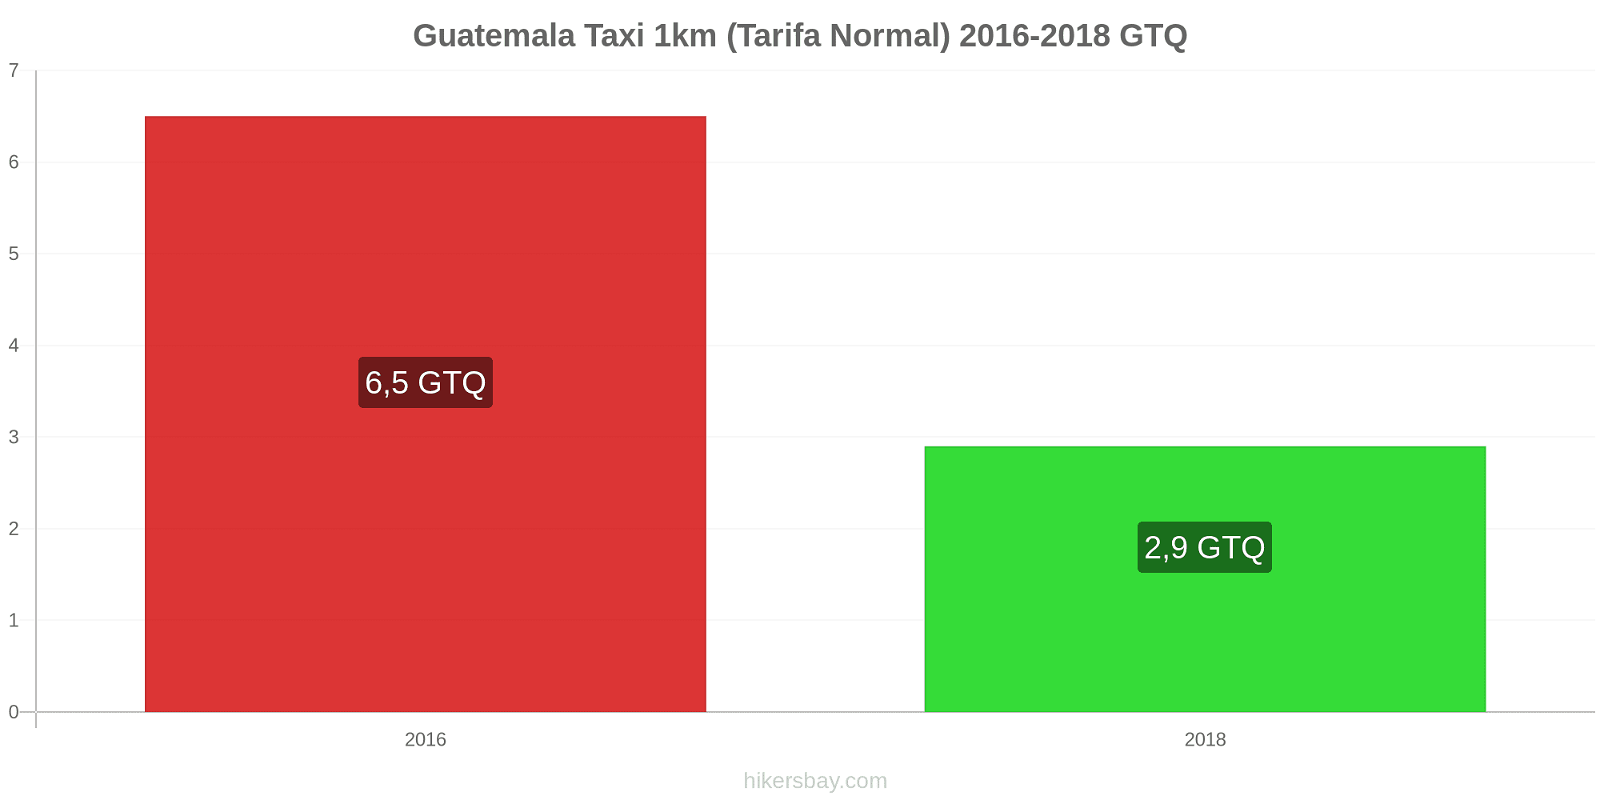 Guatemala cambios de precios Taxi 1km (tarifa normal) hikersbay.com